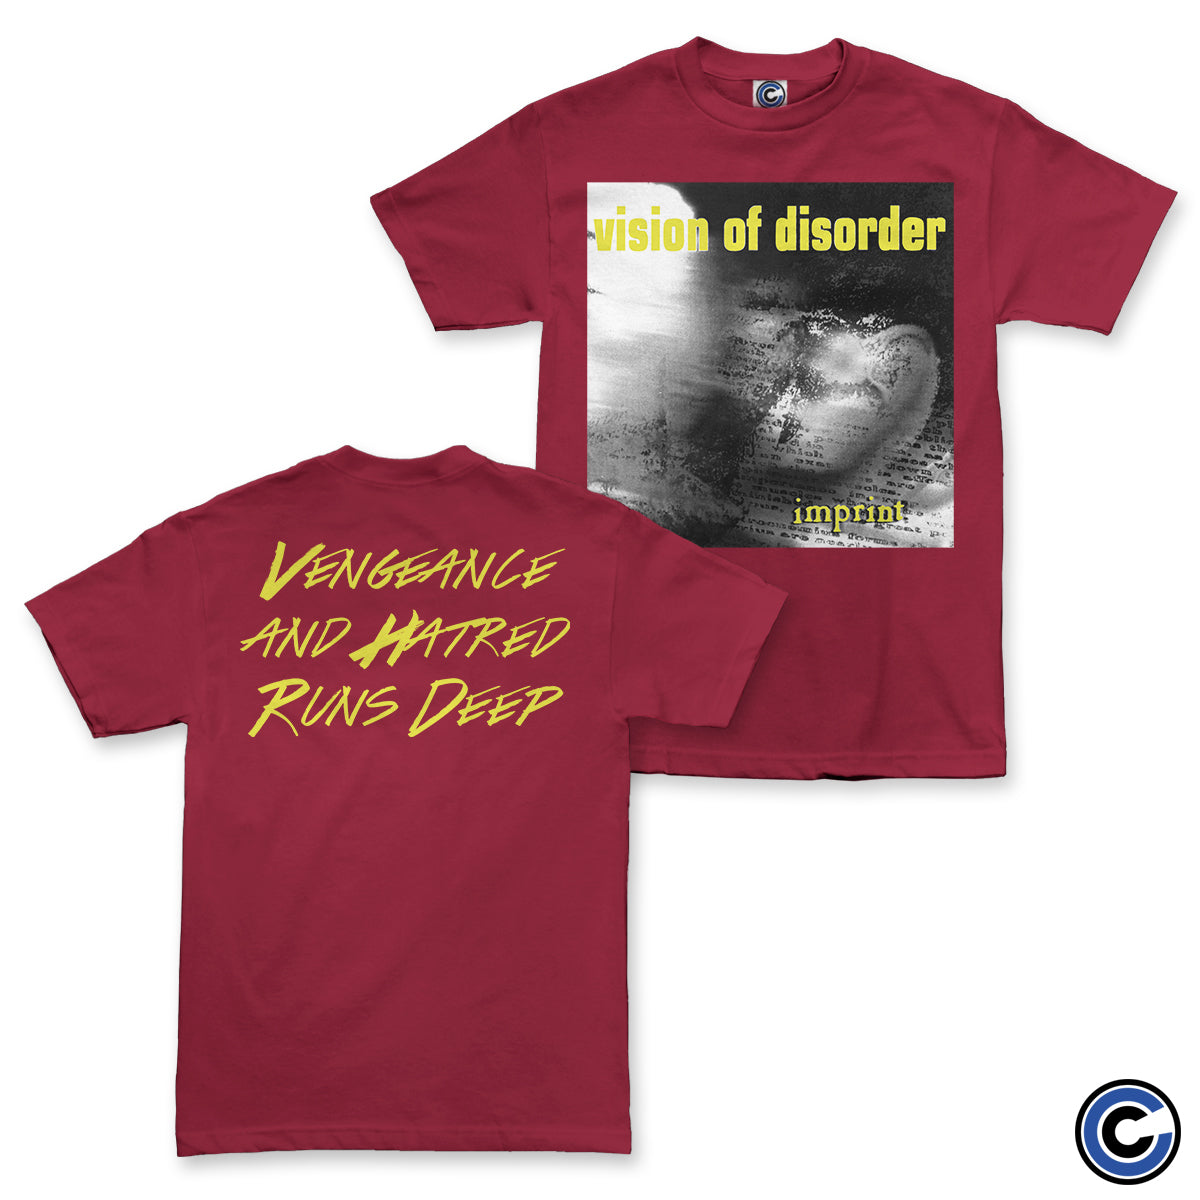 Vision of Disorder "Imprint" Shirt